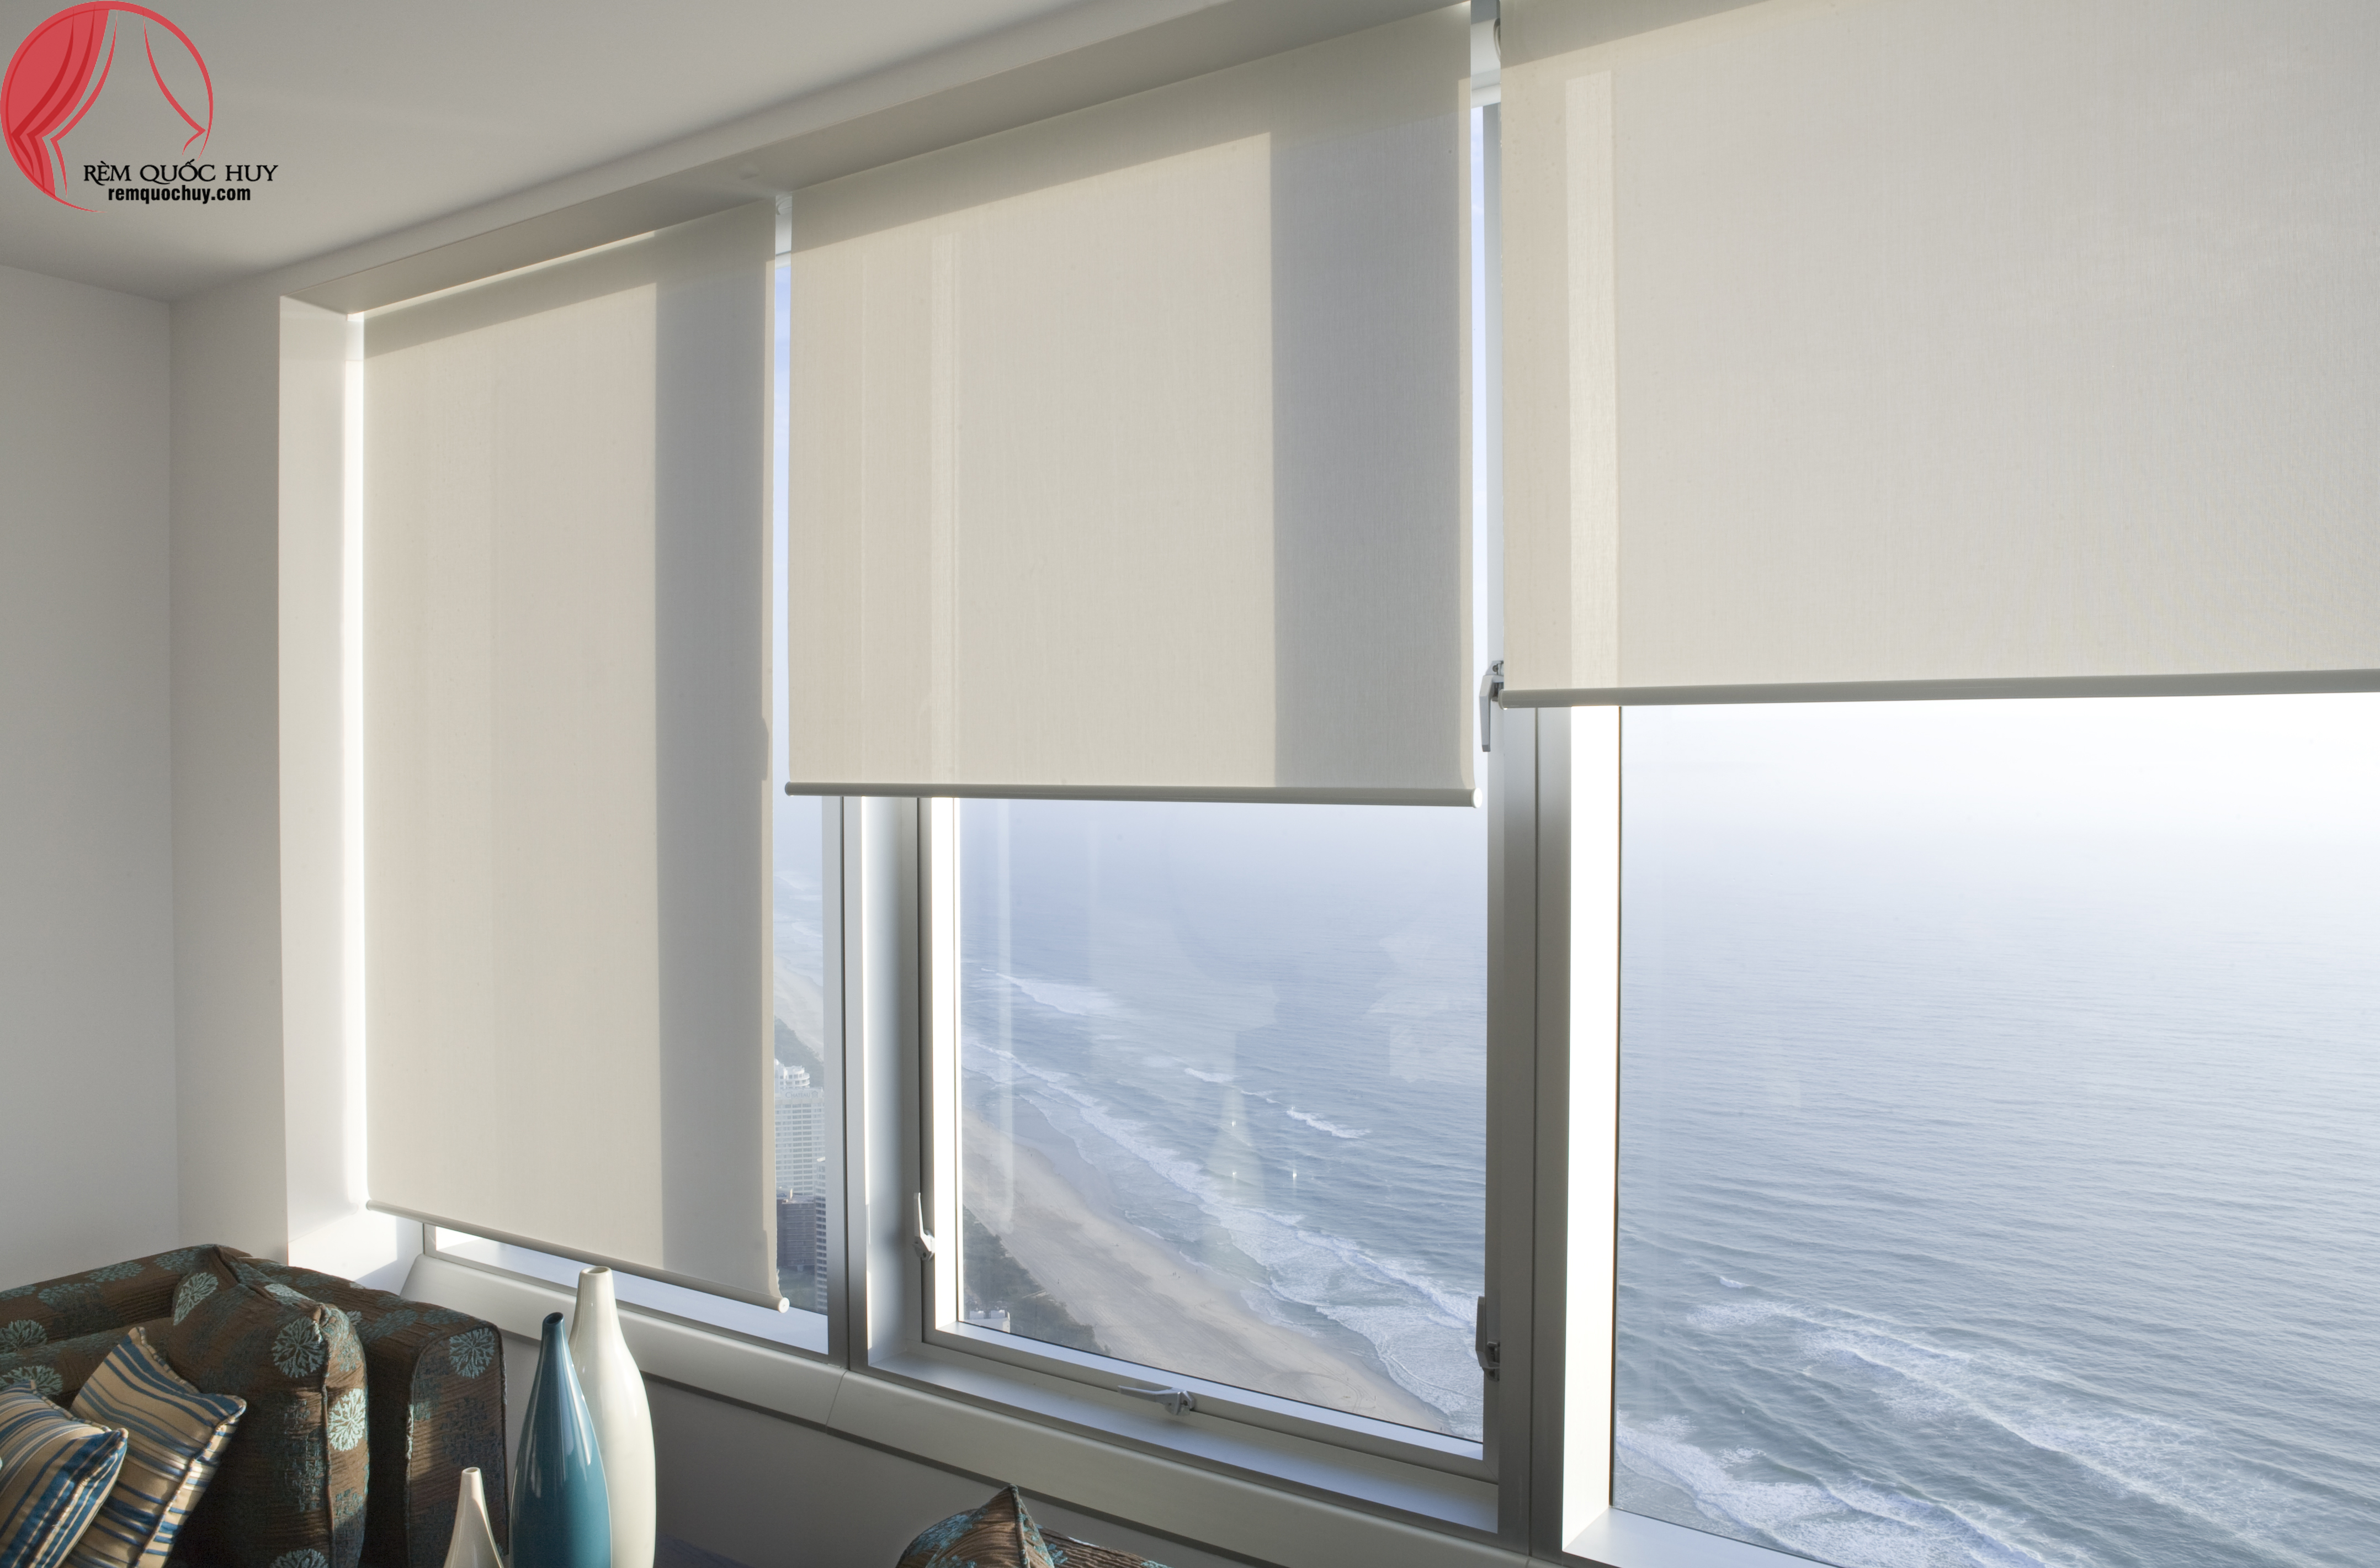 Không gian sống của bạn chưa đầy đủ nếu thiếu đi một chiếc rèm cửa phù hợp. Với những mẫu rèm cửa tinh tế tại Vũng Tàu, bạn sẽ tận hưởng được sự riêng tư và thoải mái trong căn nhà của mình.